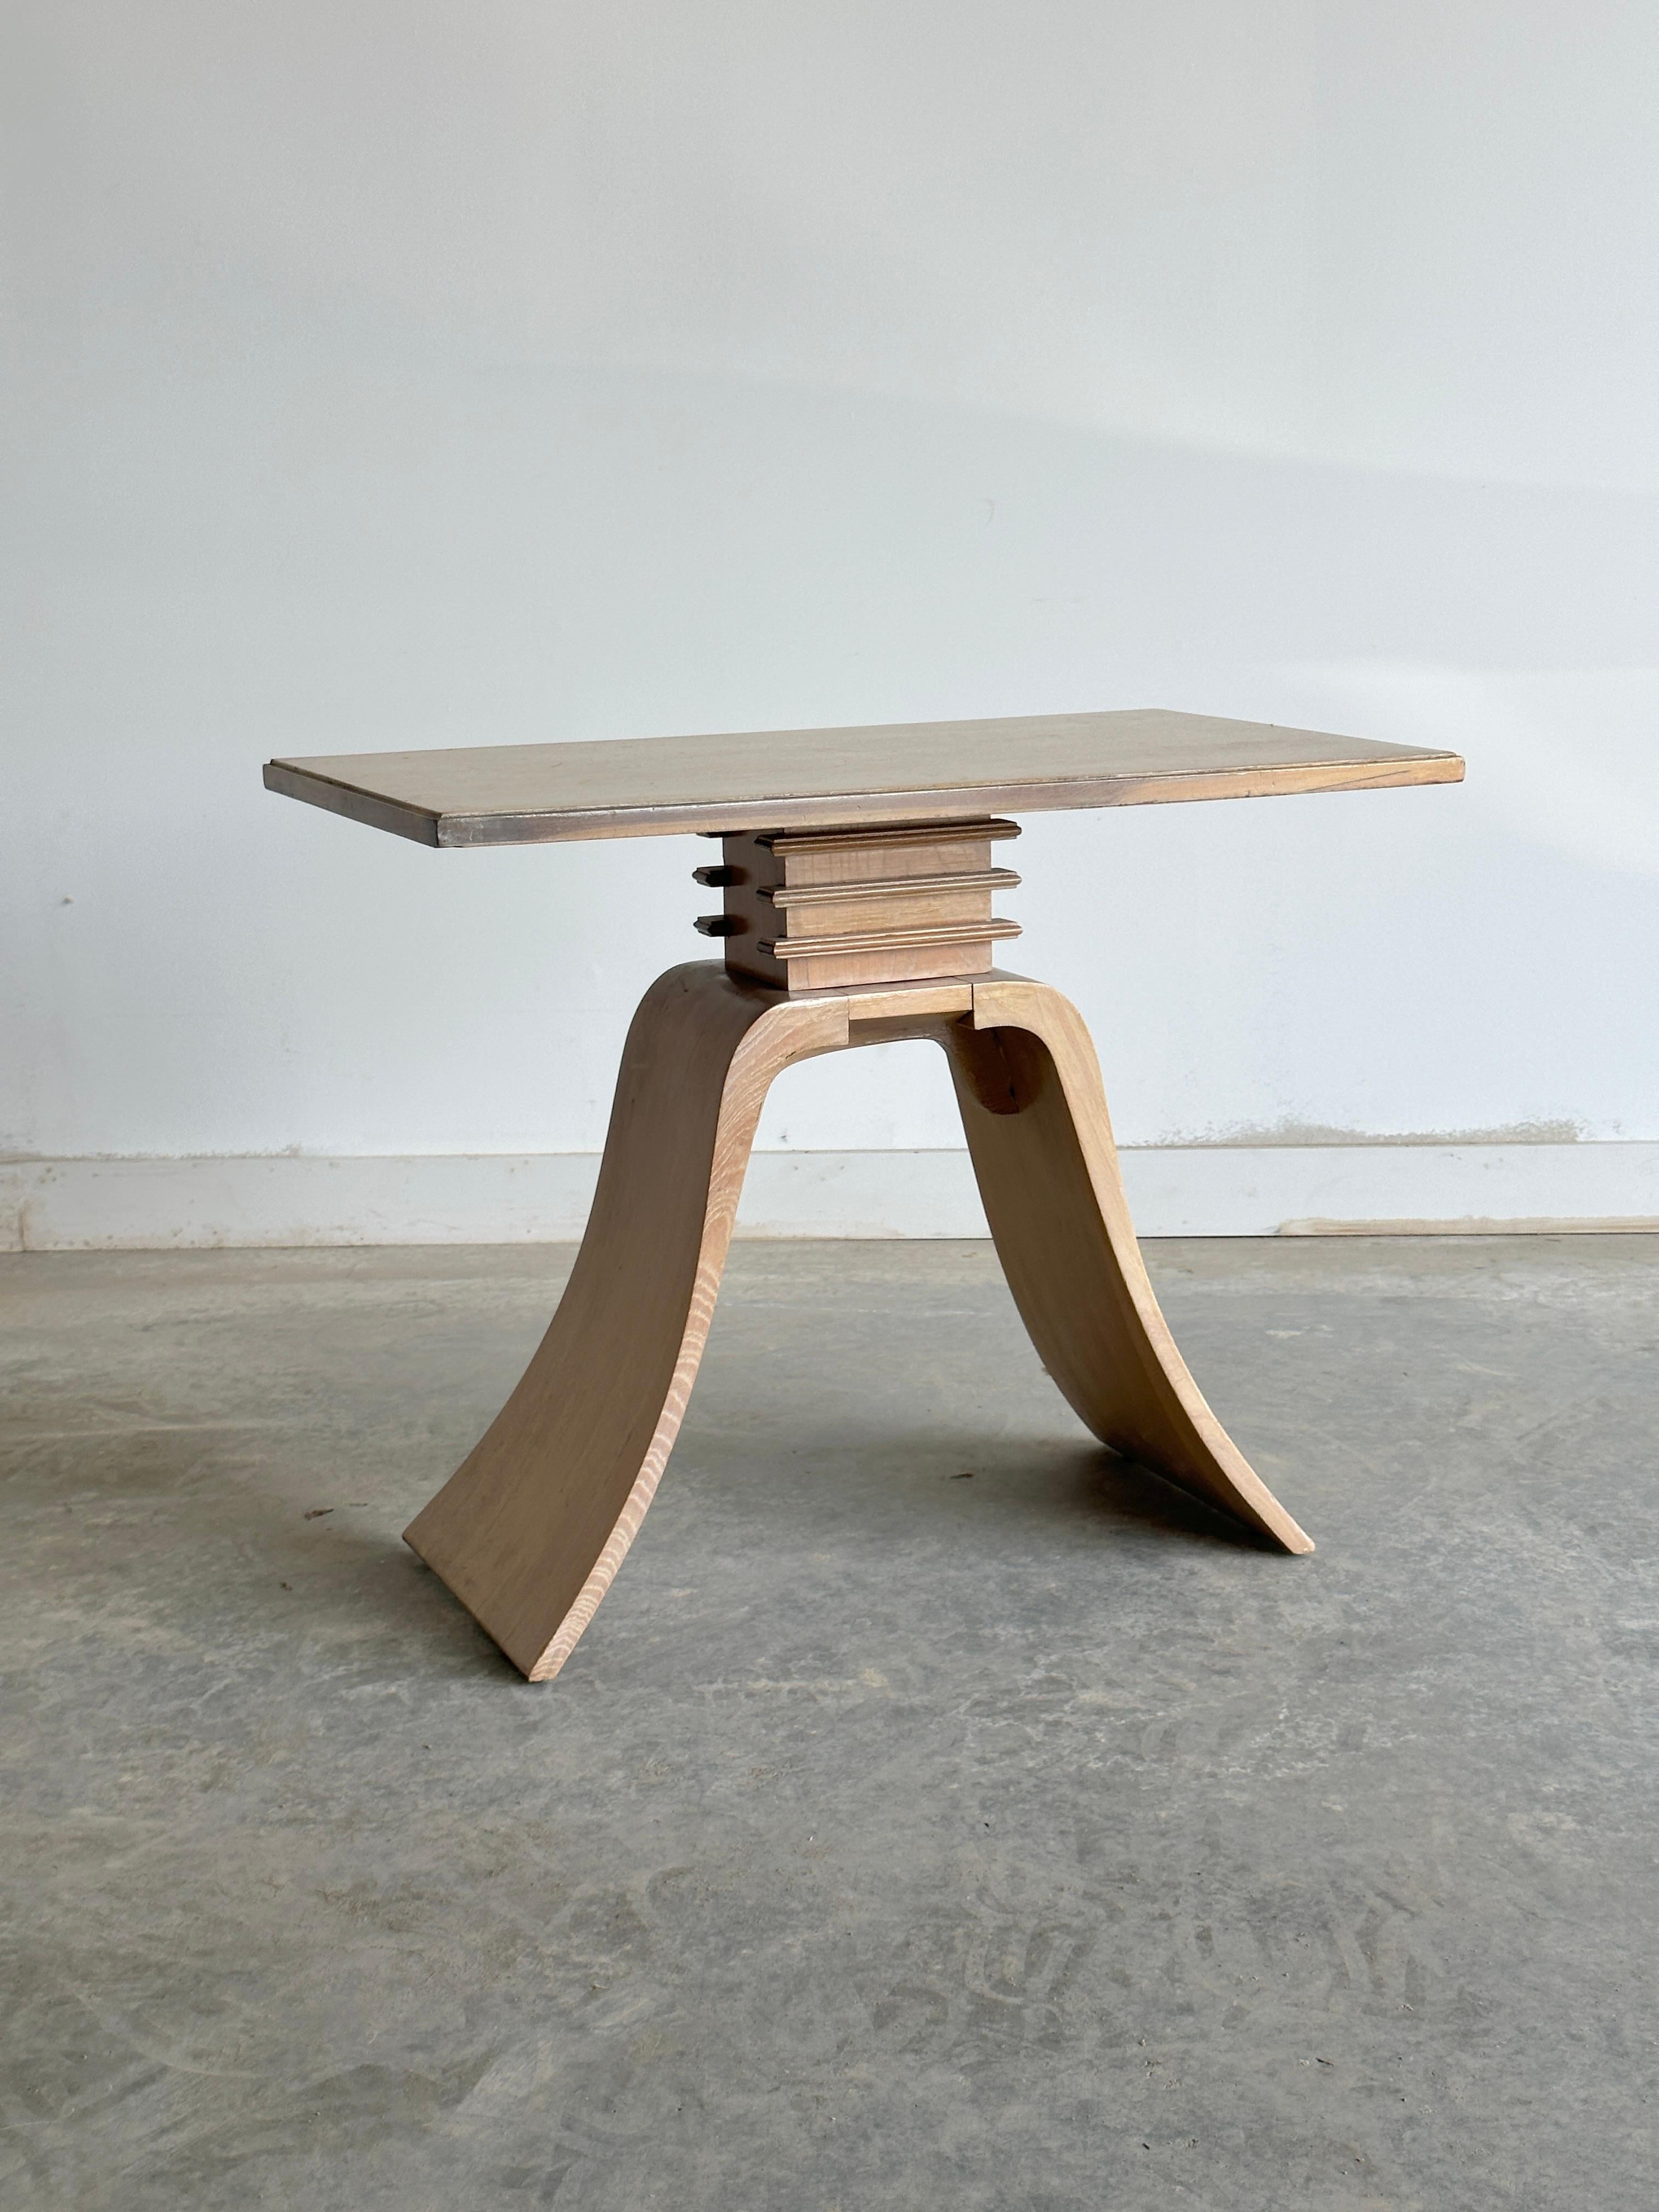 Cette table d'appoint est un merveilleux exemple du design Art déco, créé par le célèbre architecte et fabricant de meubles Paul Frankl, connu pour ses meubles inspirés des gratte-ciel et son utilisation pionnière du rotin.

Cette pièce n'est pas